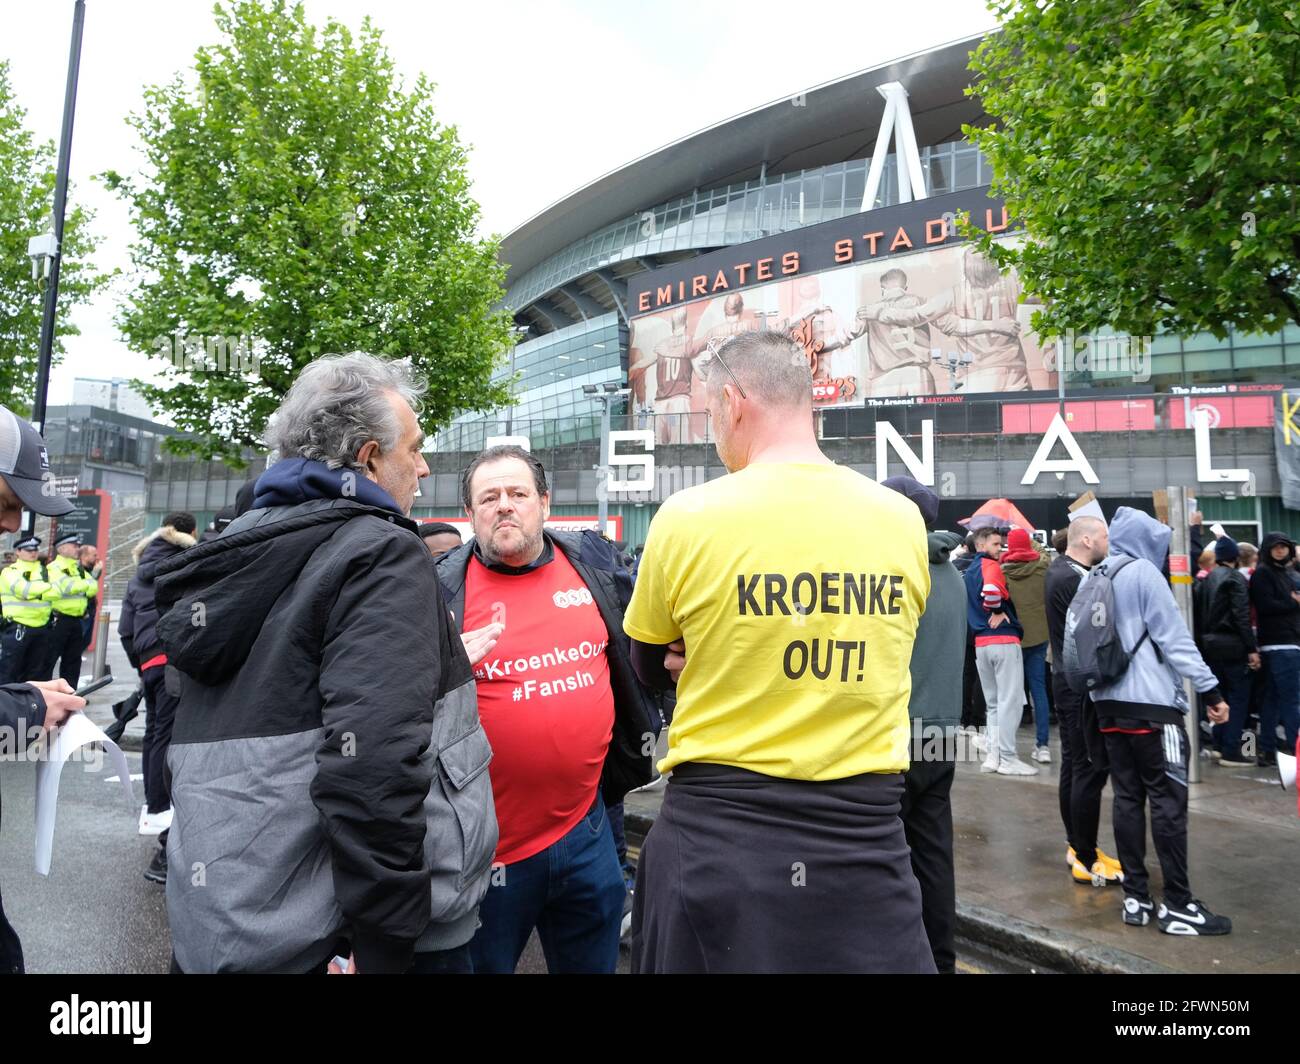 Londra, Regno Unito. 23/05/21 i tifosi dell'Arsenal si riuniscono per protestare contro il proprietario Stan Kroenke, accusato di aver usato il club come una 'mucca in contanti'. Foto Stock